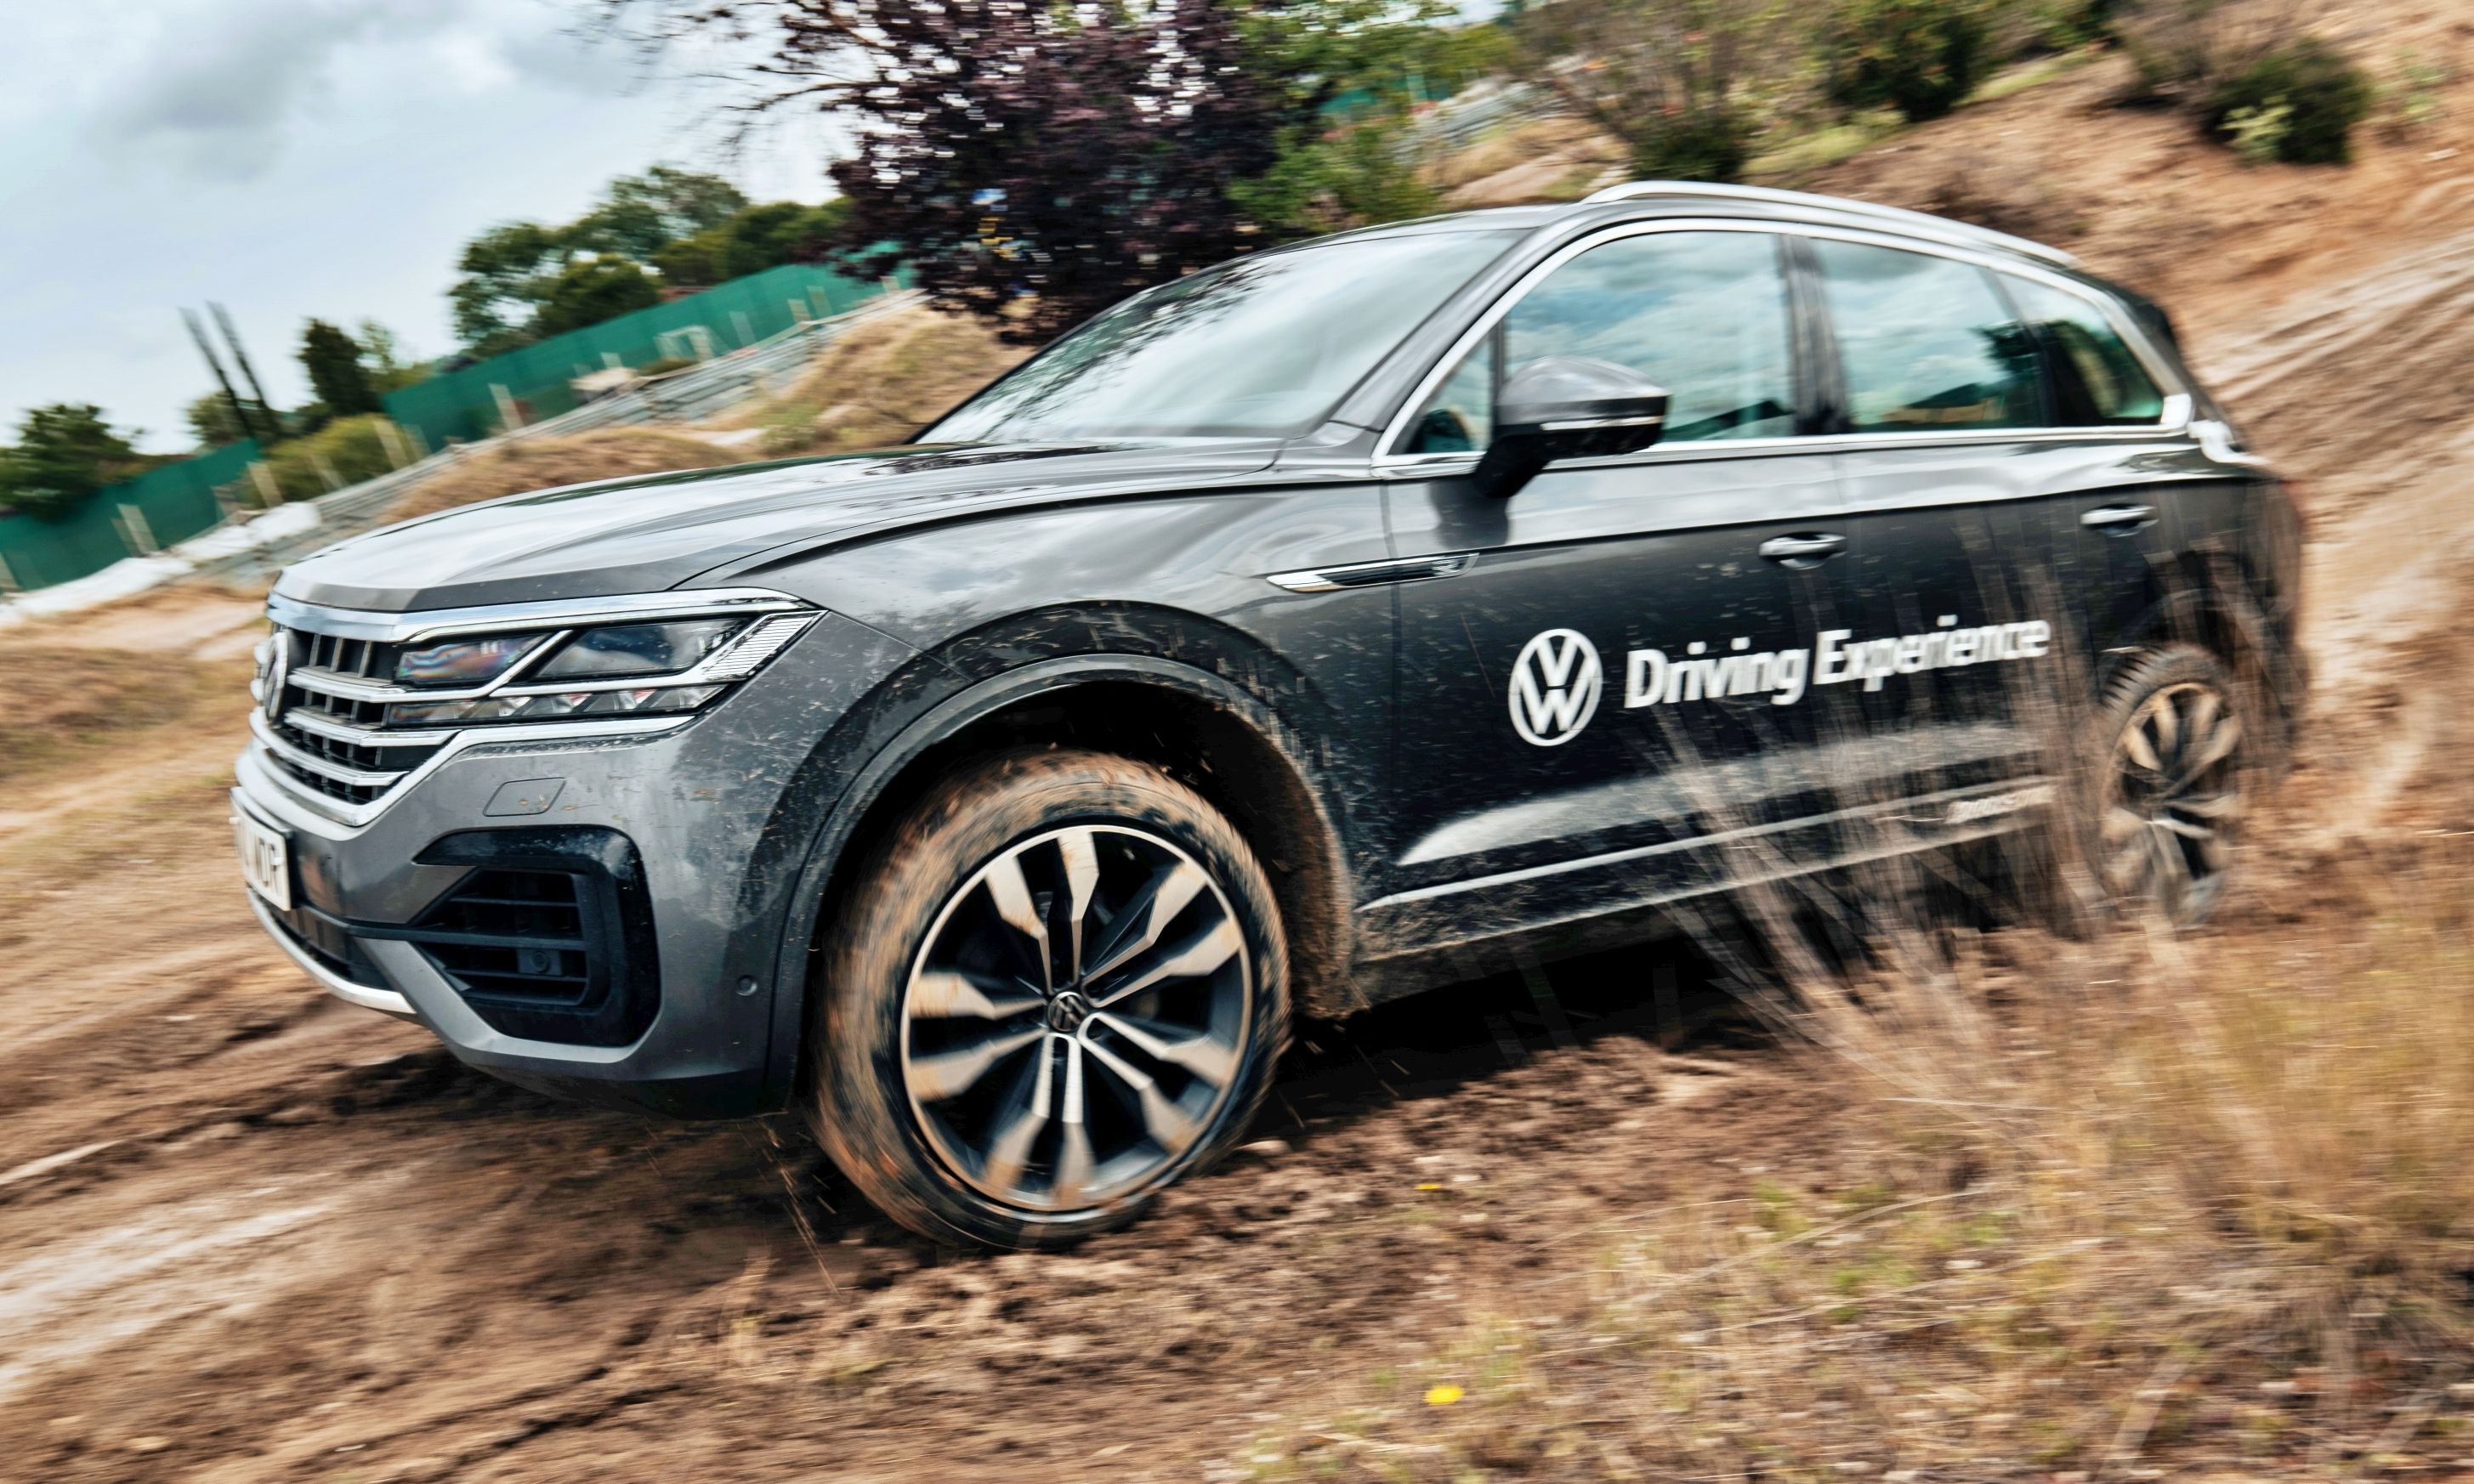 La Volkswagen Driving Experience ofrece cursos off-road y en asfalto con modelos de toda la gama.